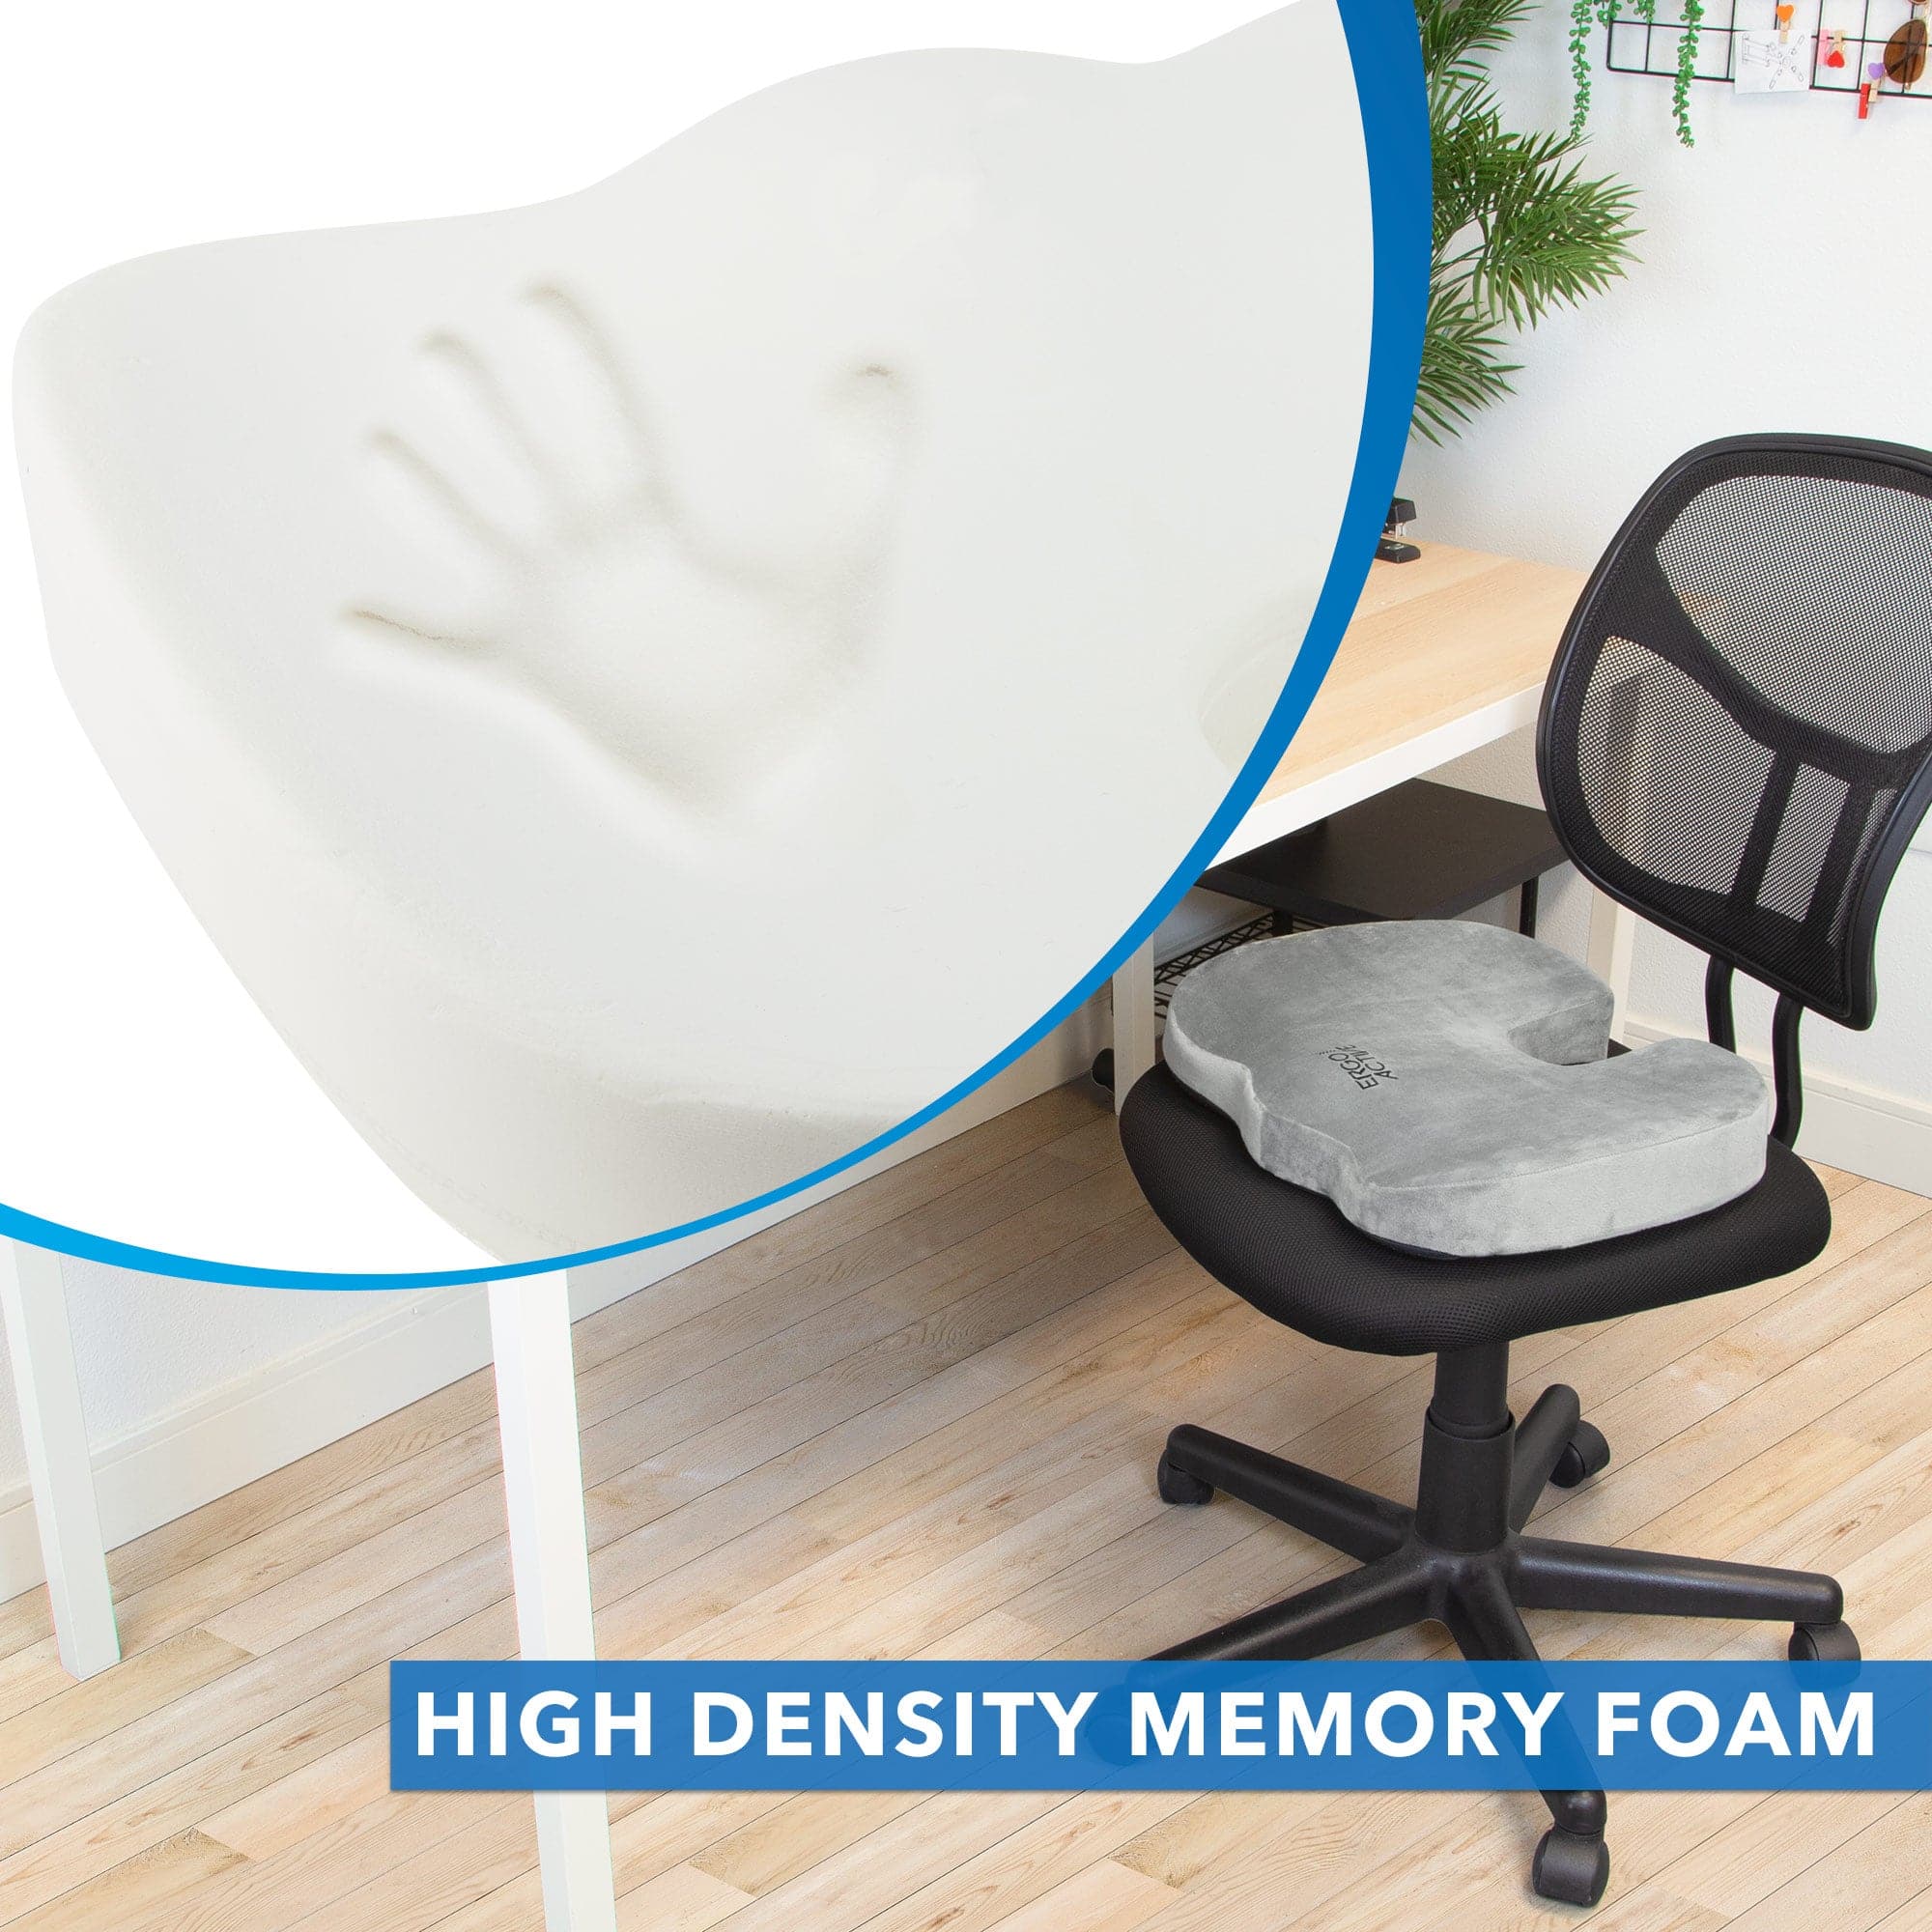 Ergonomic Memory Foam Seat Cushion - ERGORILLA